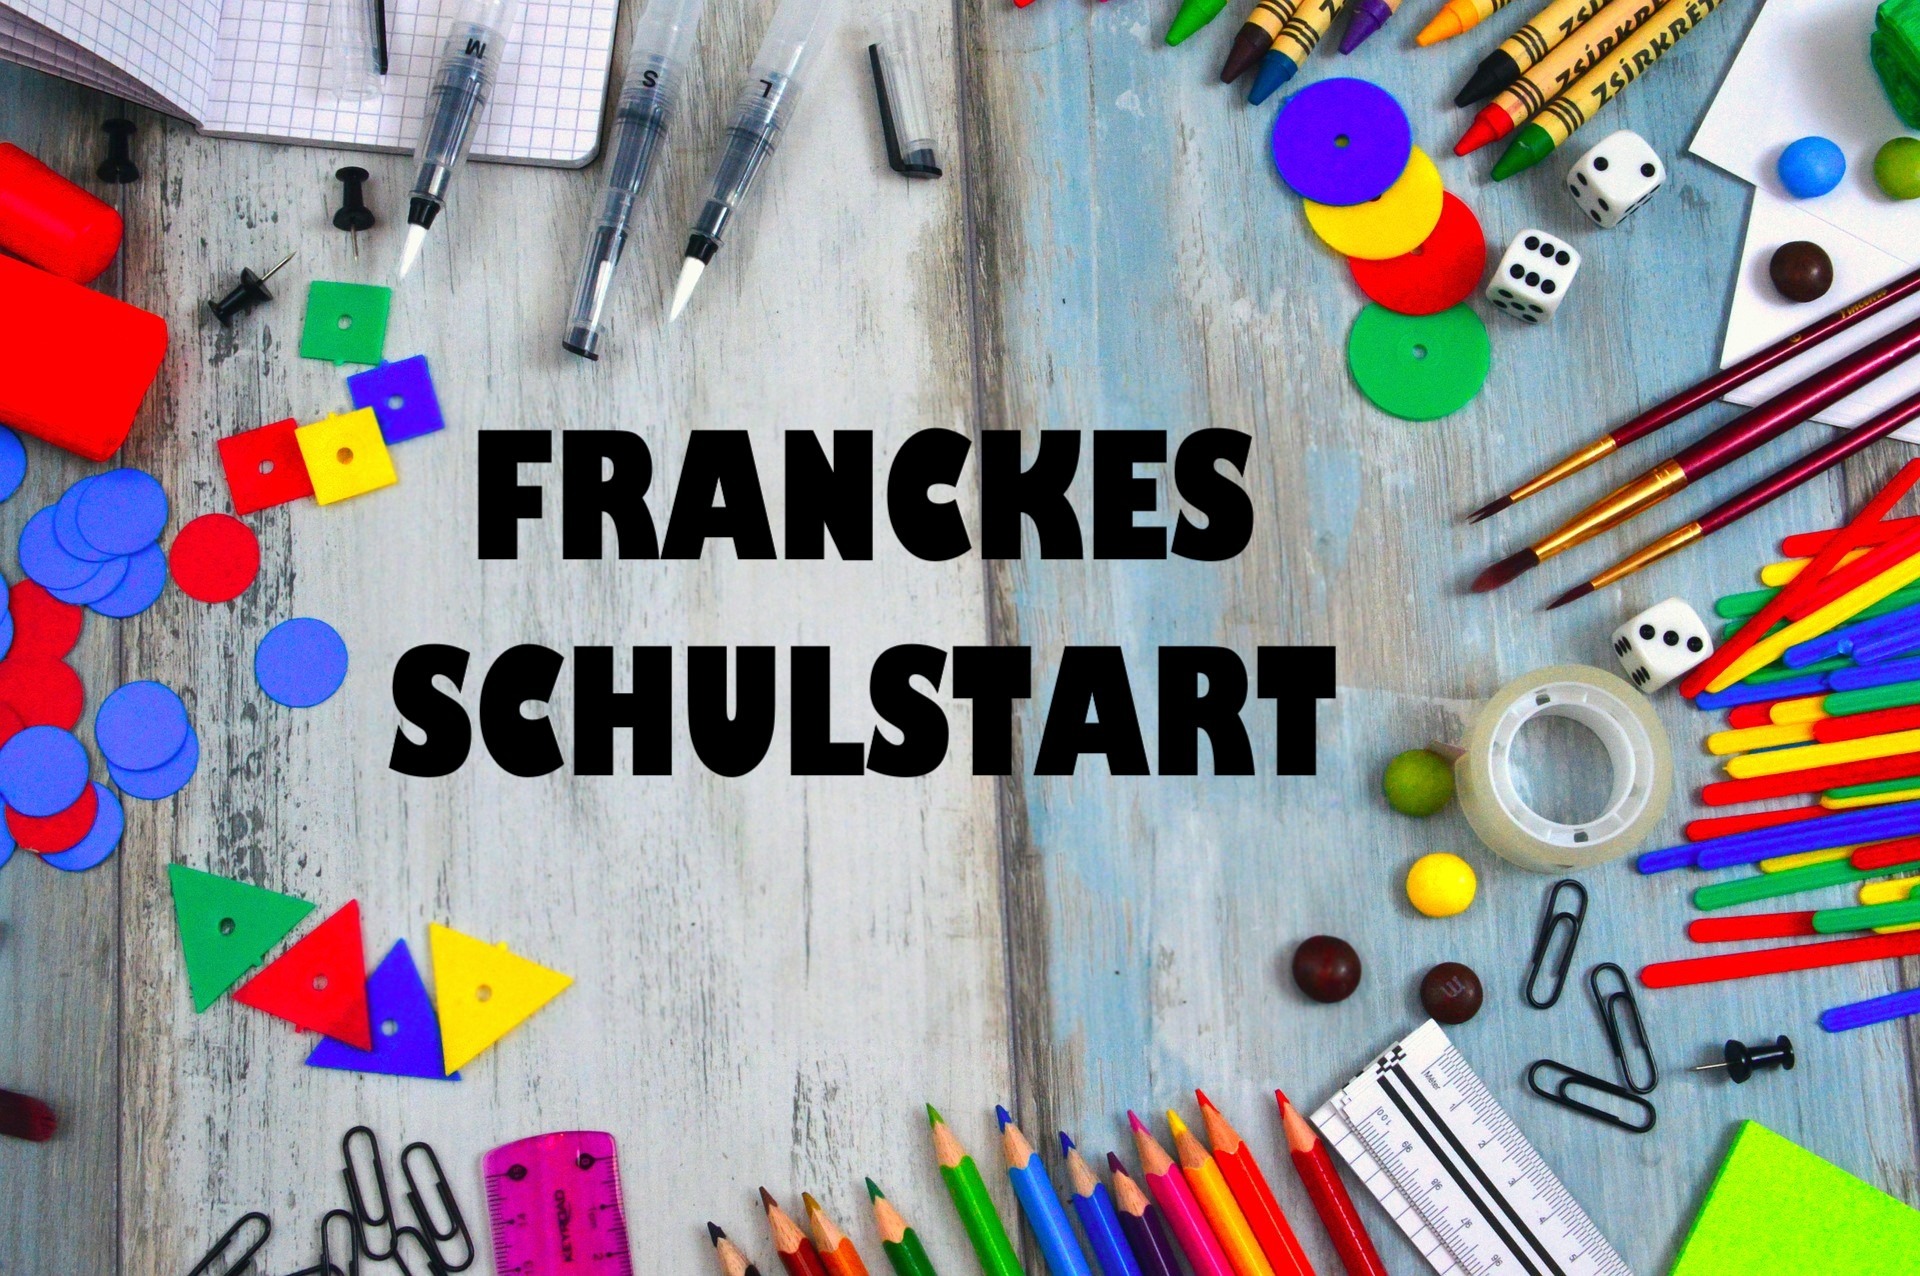 Franckes Schulstart 2020 - Bild 1